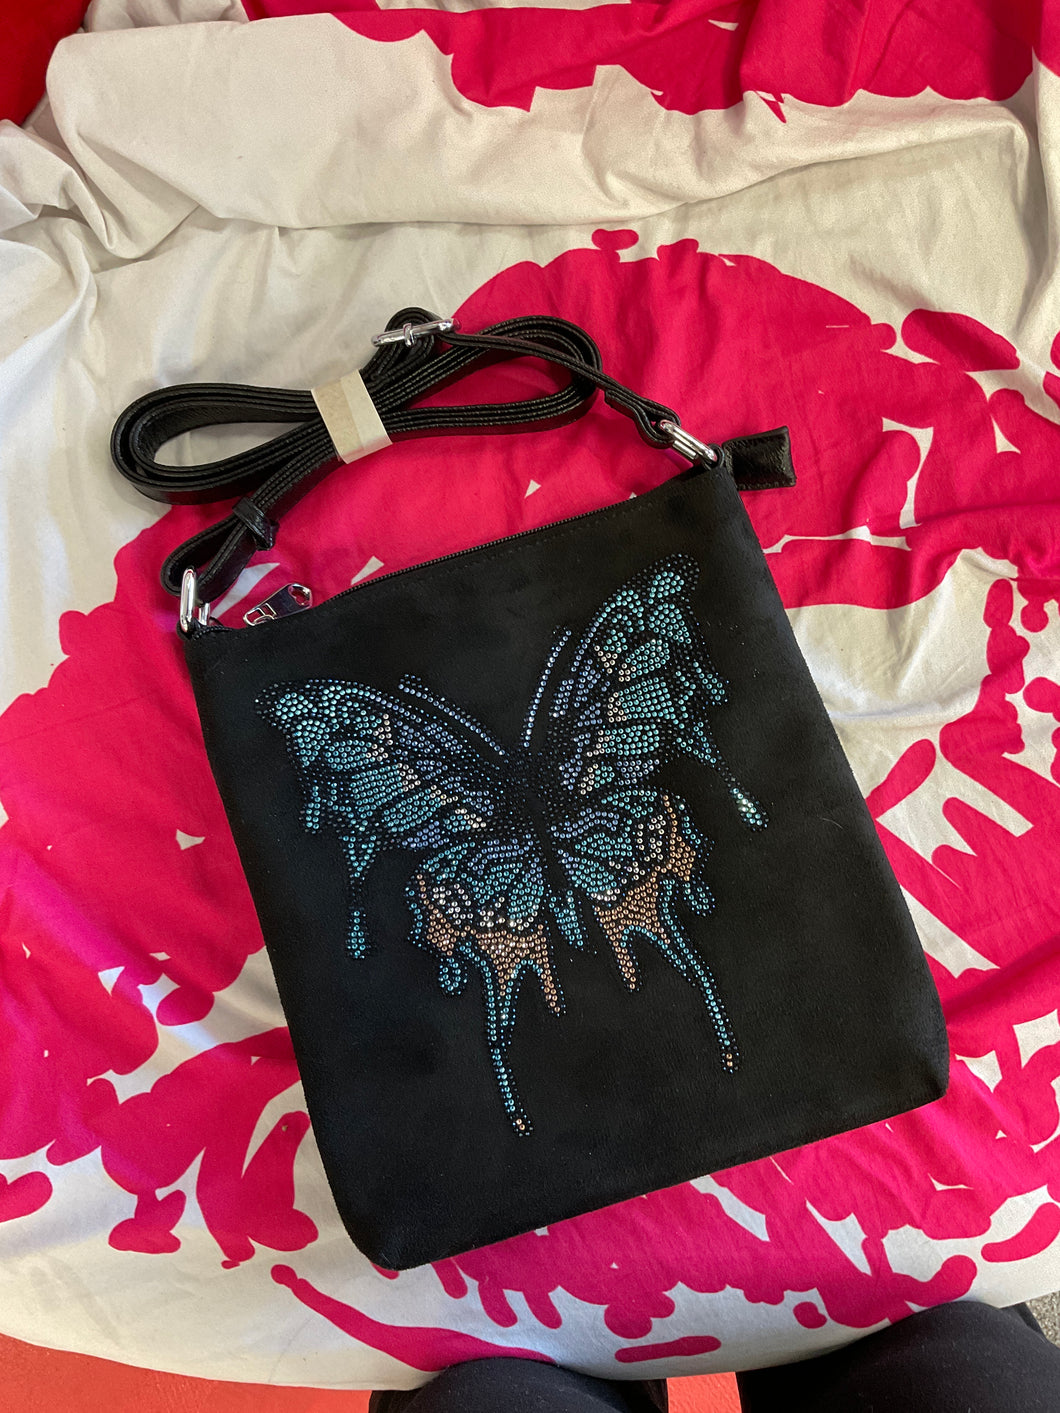 Iridescent butterfly purse